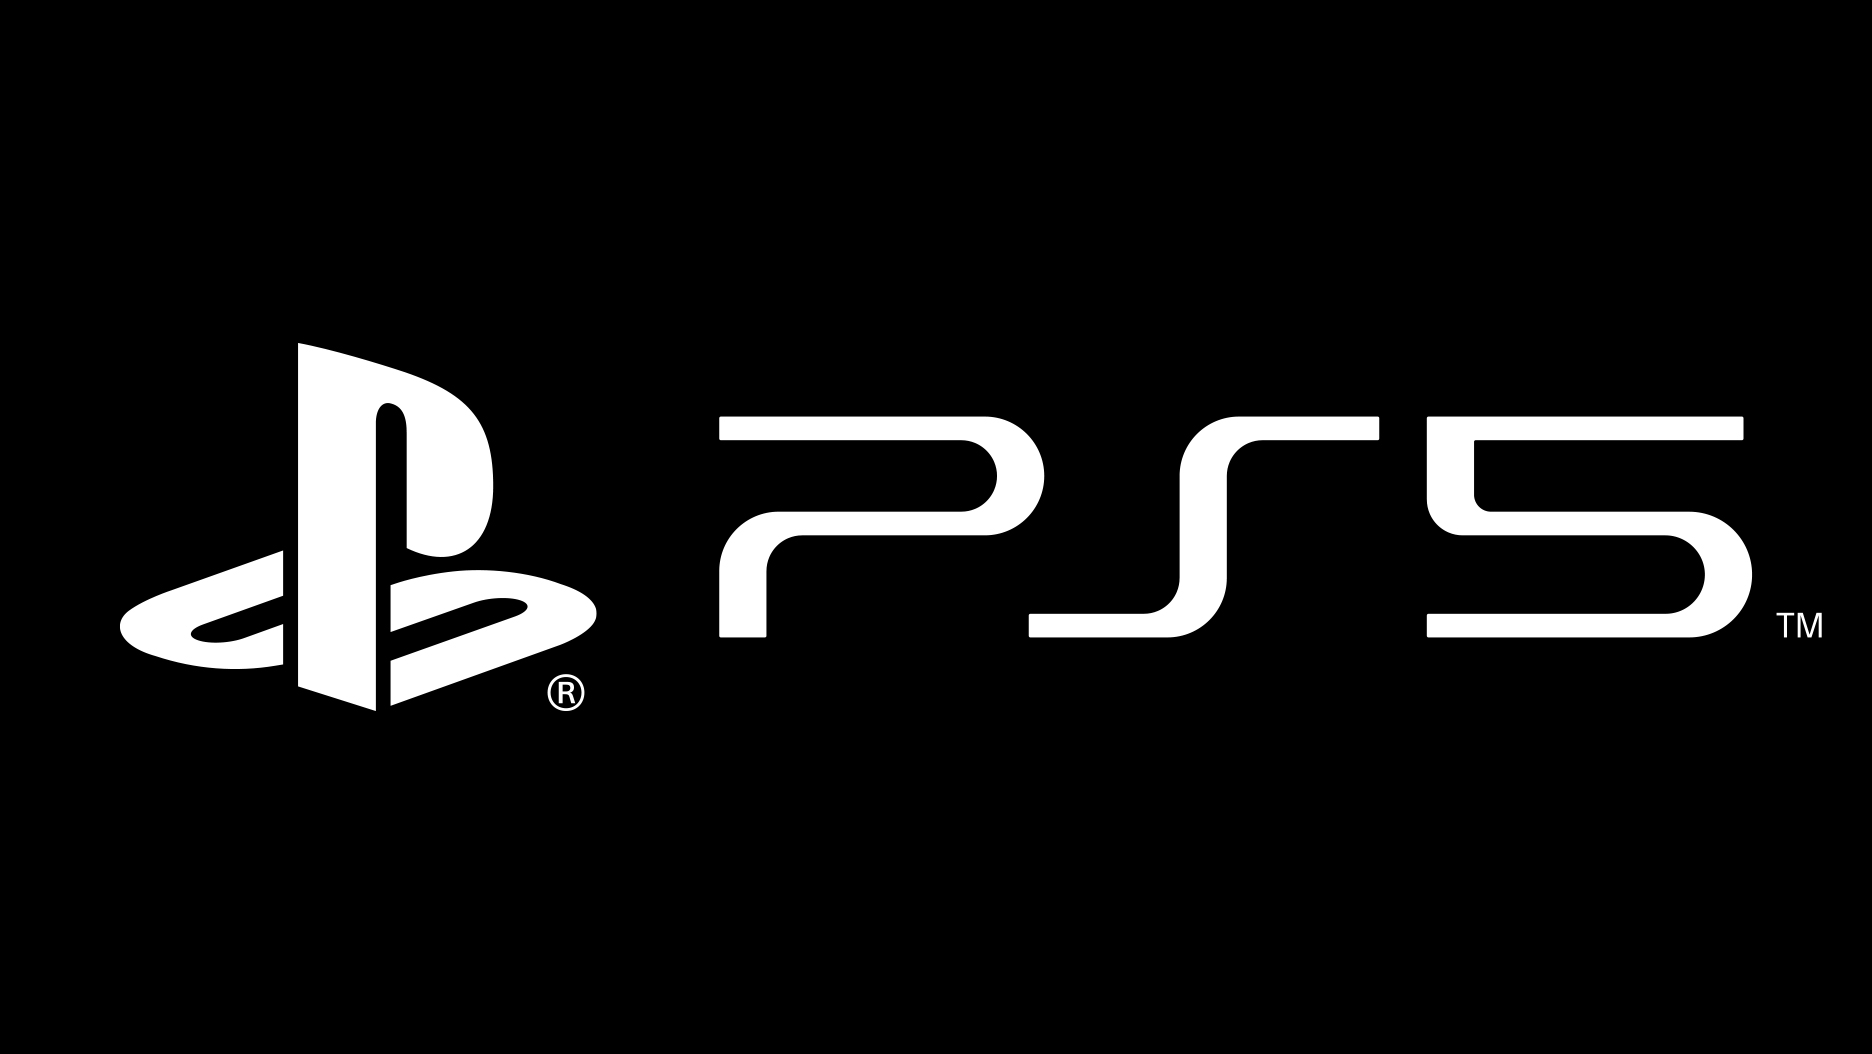 Logo 5 4. Sony PLAYSTATION 5 логотип. Sony PLAYSTATION 4 logo. PLAYSTATION 5 logo PNG. PLAYSTATION 5 Slim.